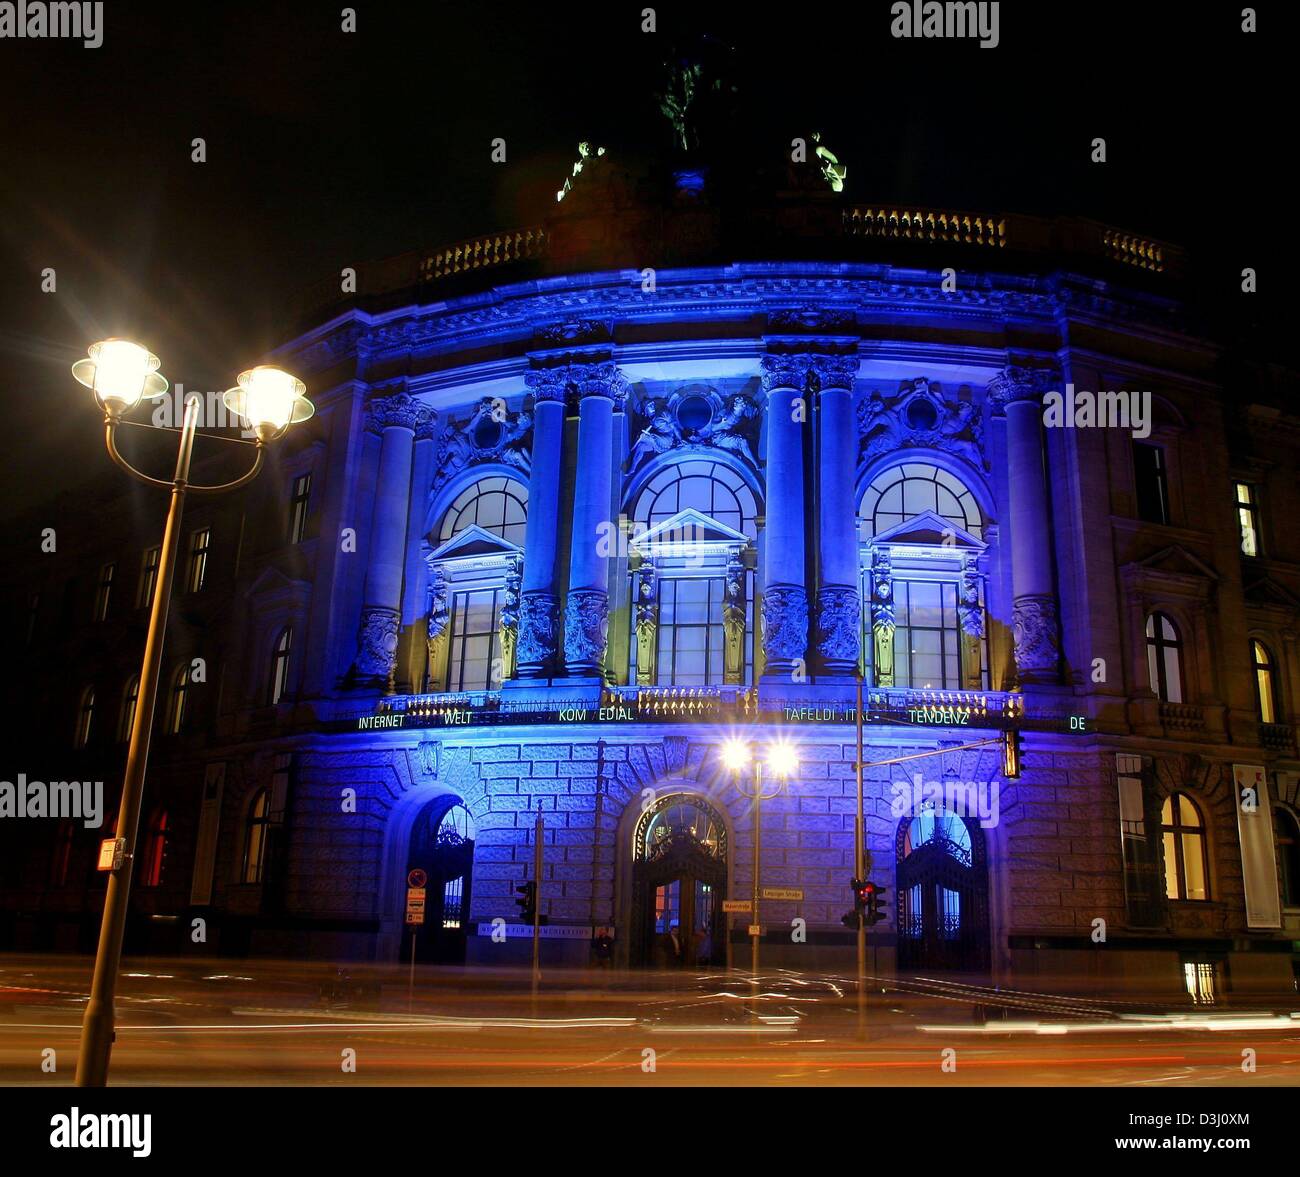 (Afp) - La façade du Musée de la communication (courrier Musée) s'illumine de lumière bleue dans Berlin, 12 février 2004. Le musée est considéré comme le plus ancien musée de la poste dans le monde. Le musée a été fondé et inauguré en 1898 à l'initiative de Heinrich VON STEPHAN, alors chef de la poste allemande. La majorité de la collection a été relocalisé à Hesse pendant la S Banque D'Images